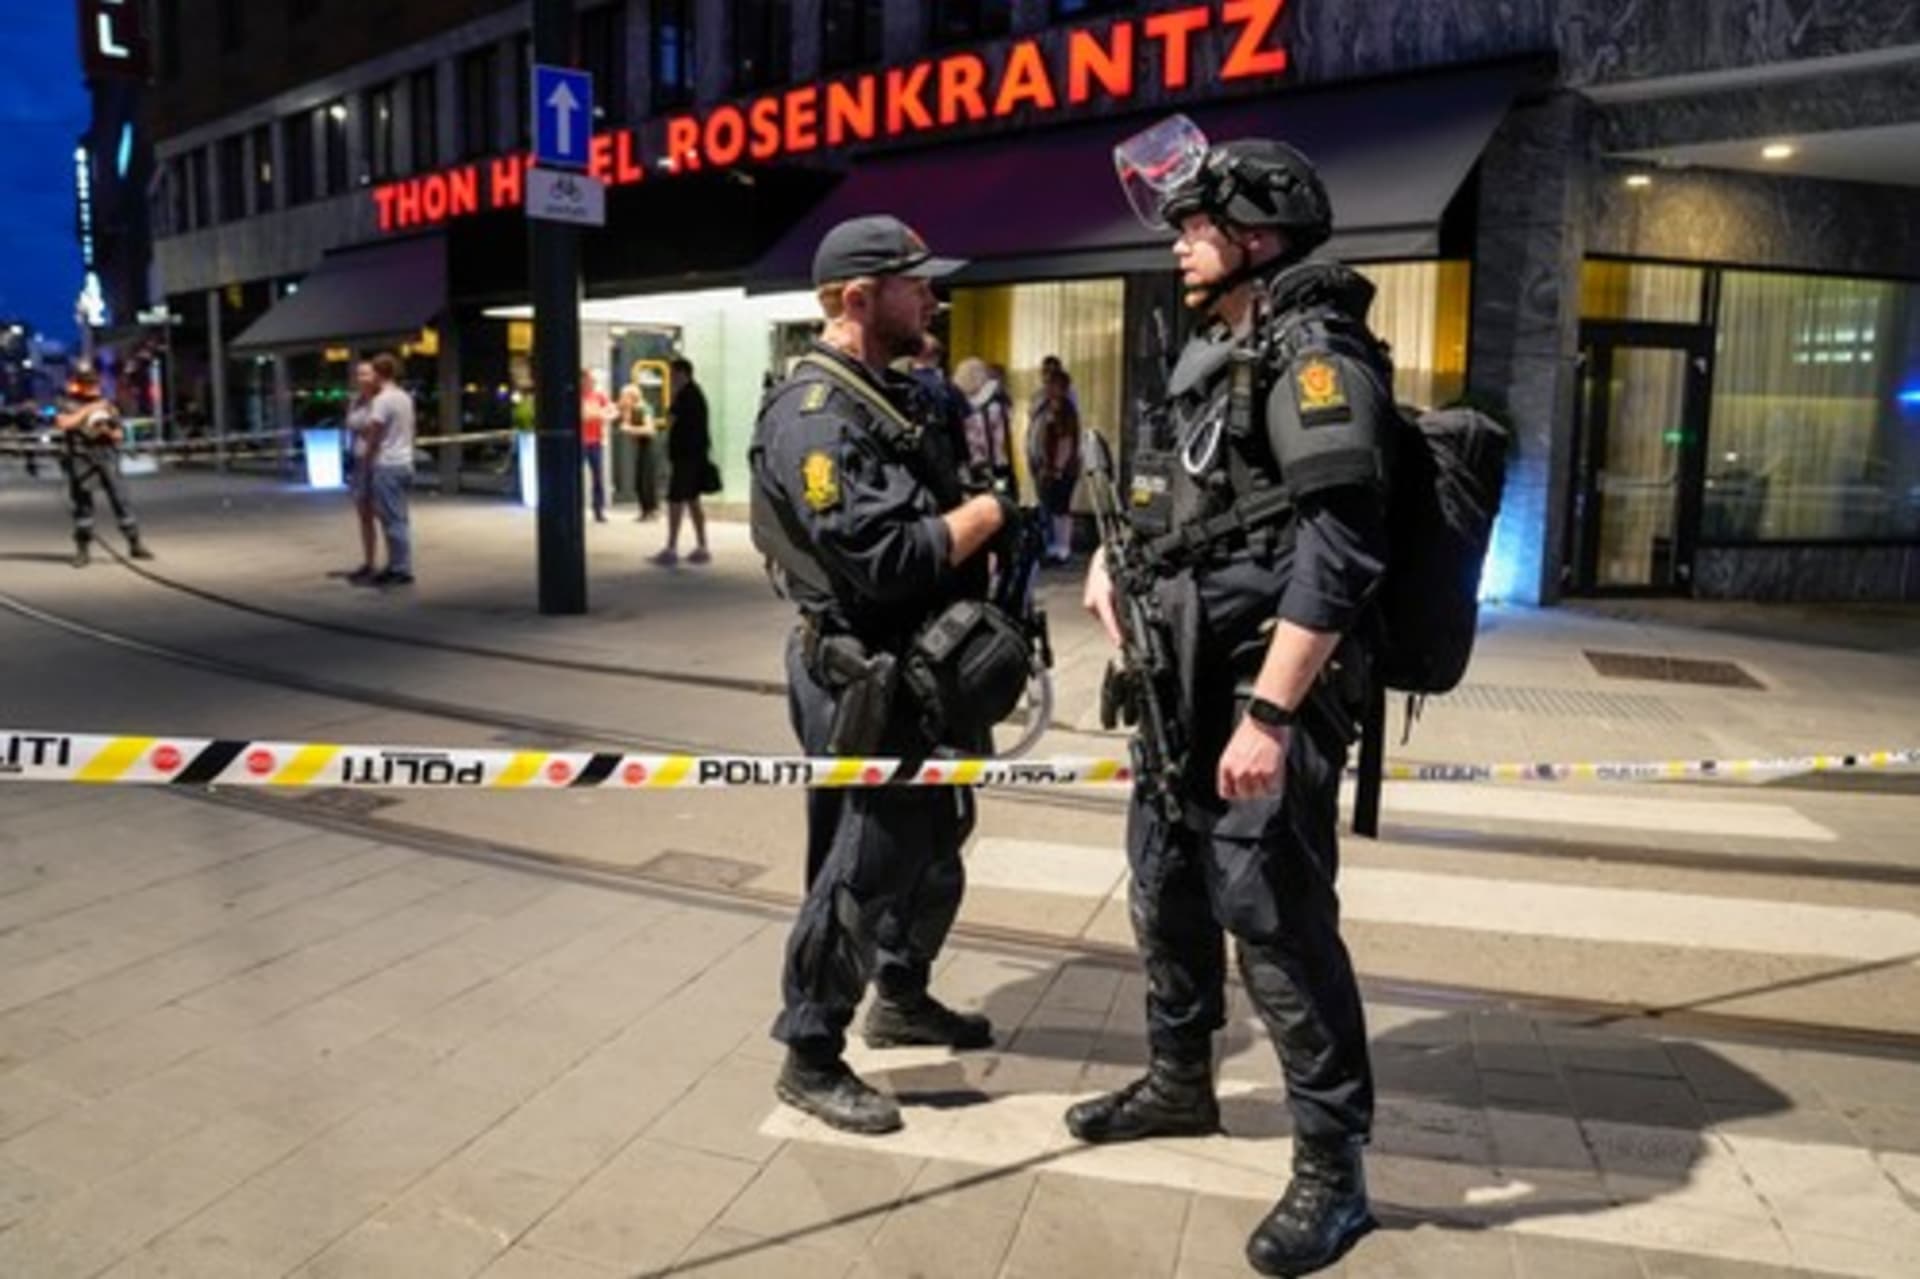 Dva lidé zemřeli a další utrpěli vážná zranění při střelbě v gay baru v Oslu